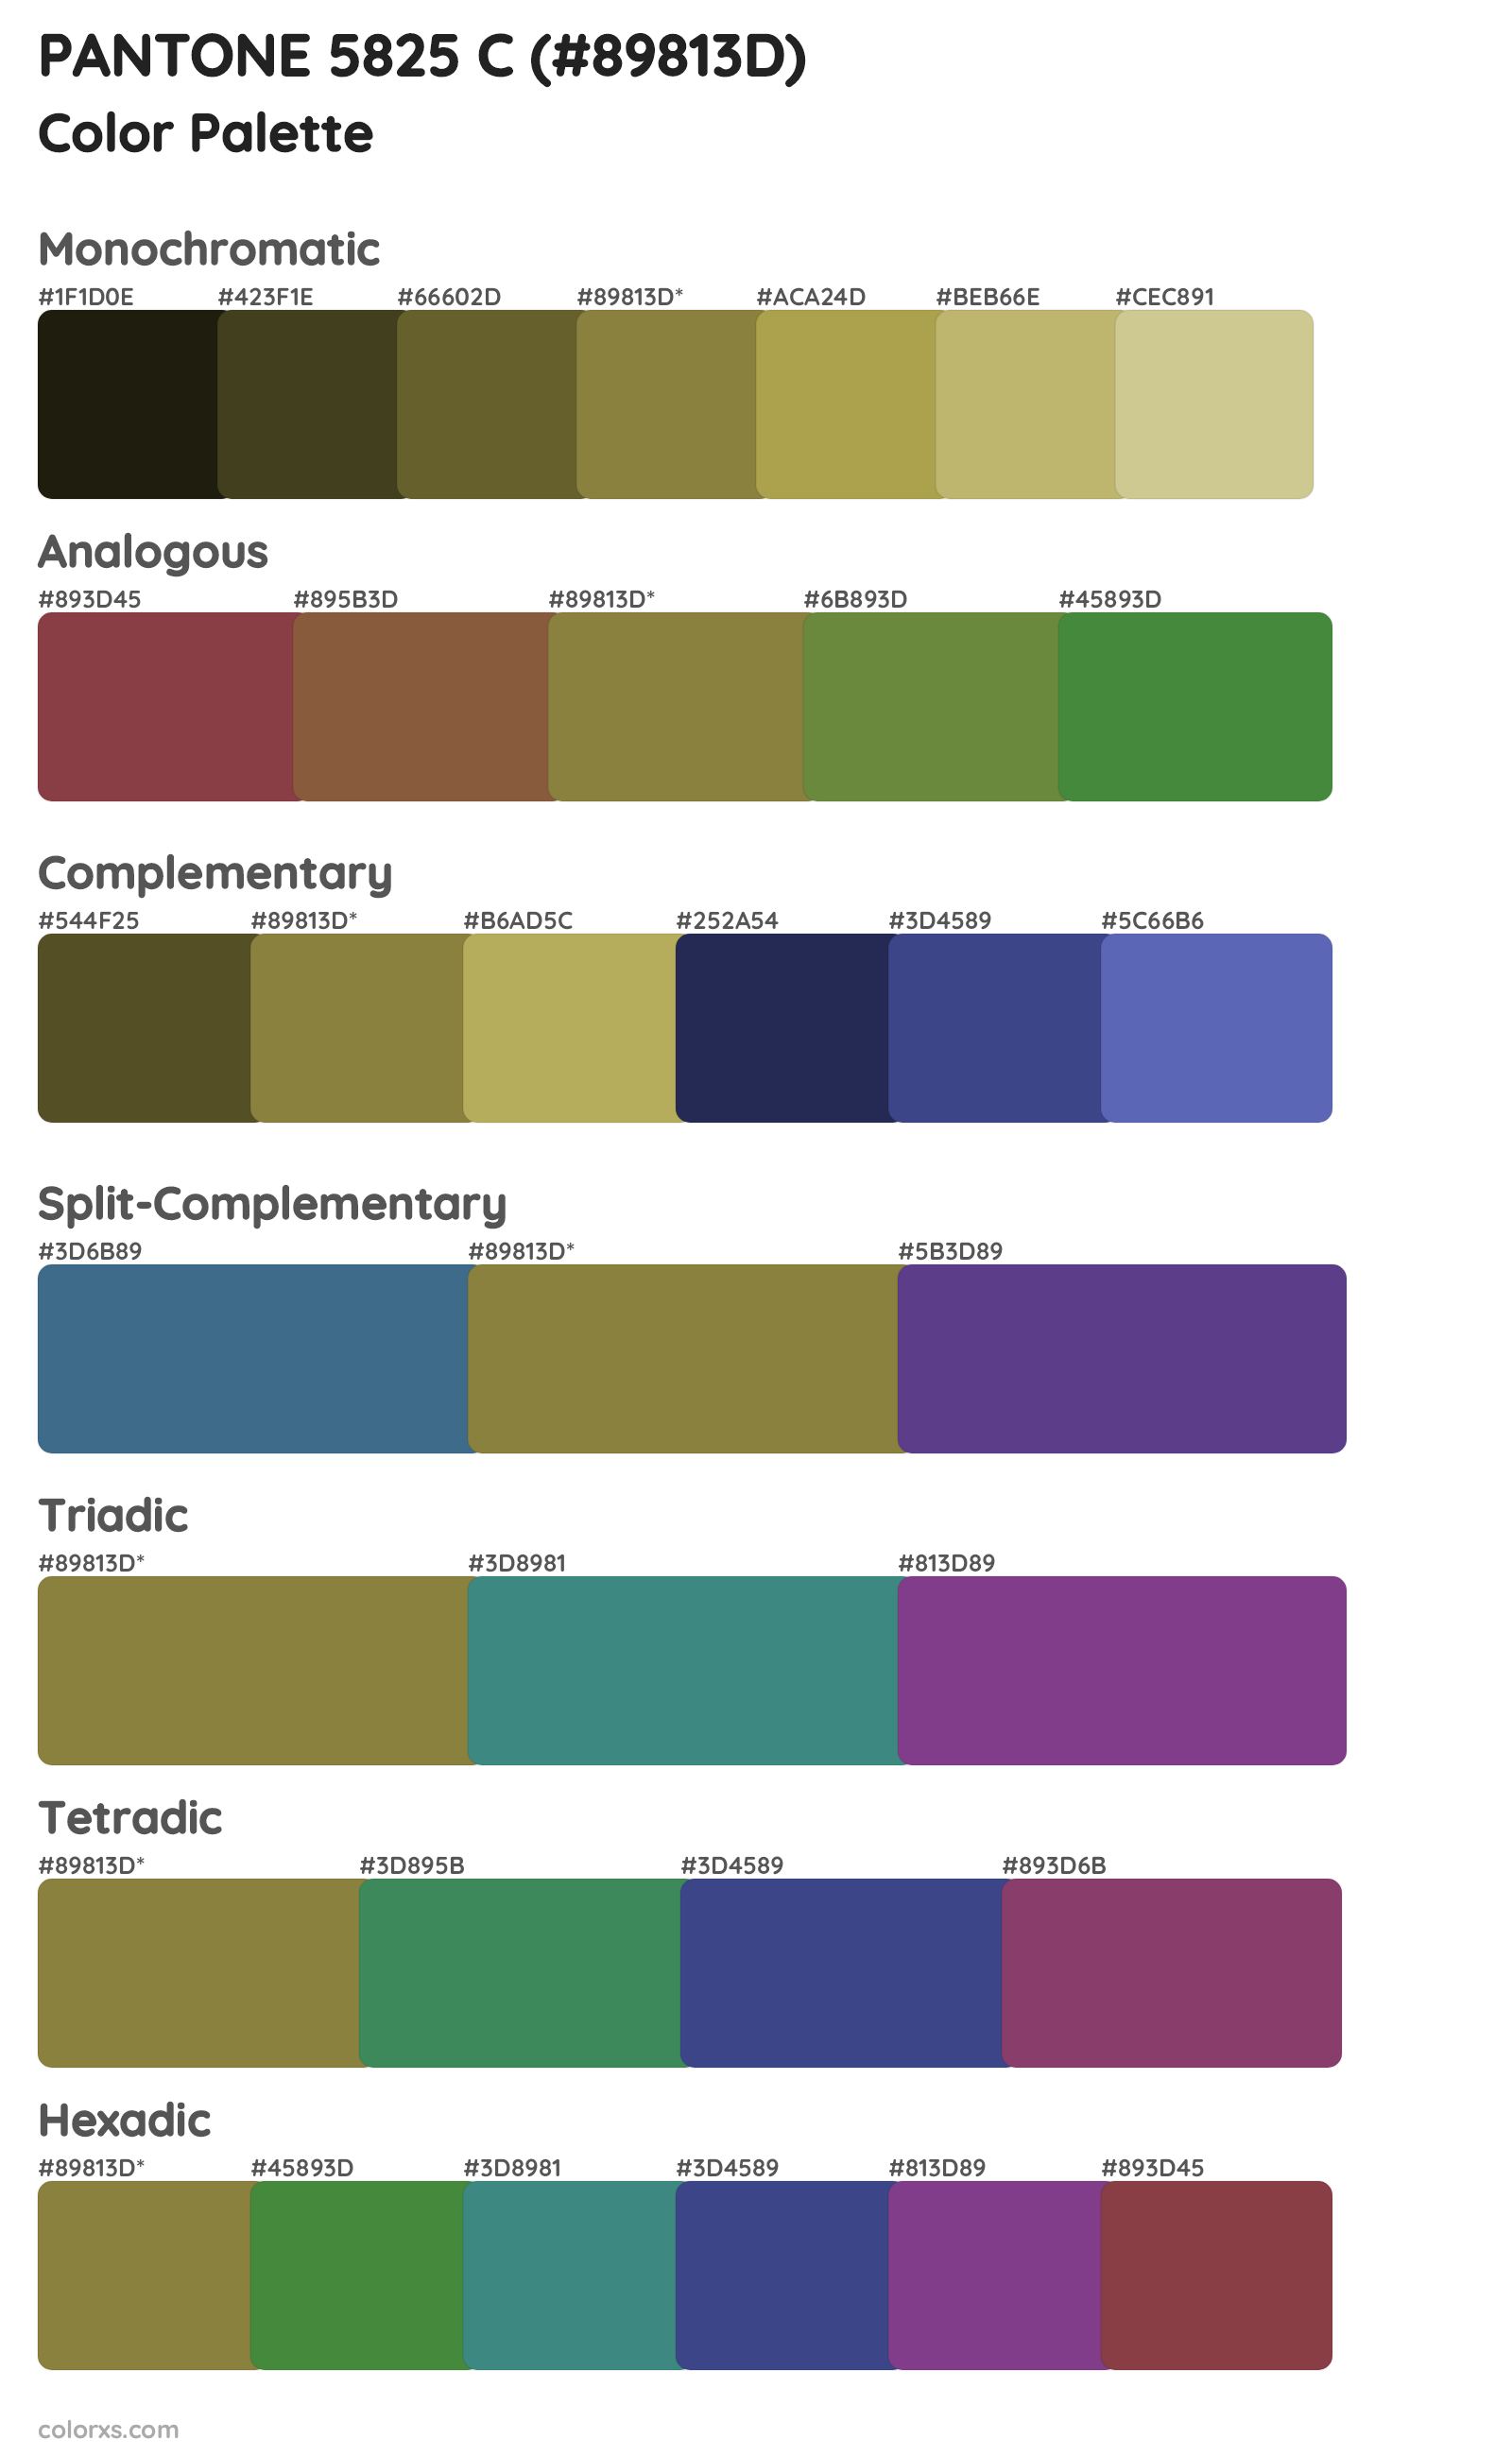 PANTONE 5825 C Color Scheme Palettes